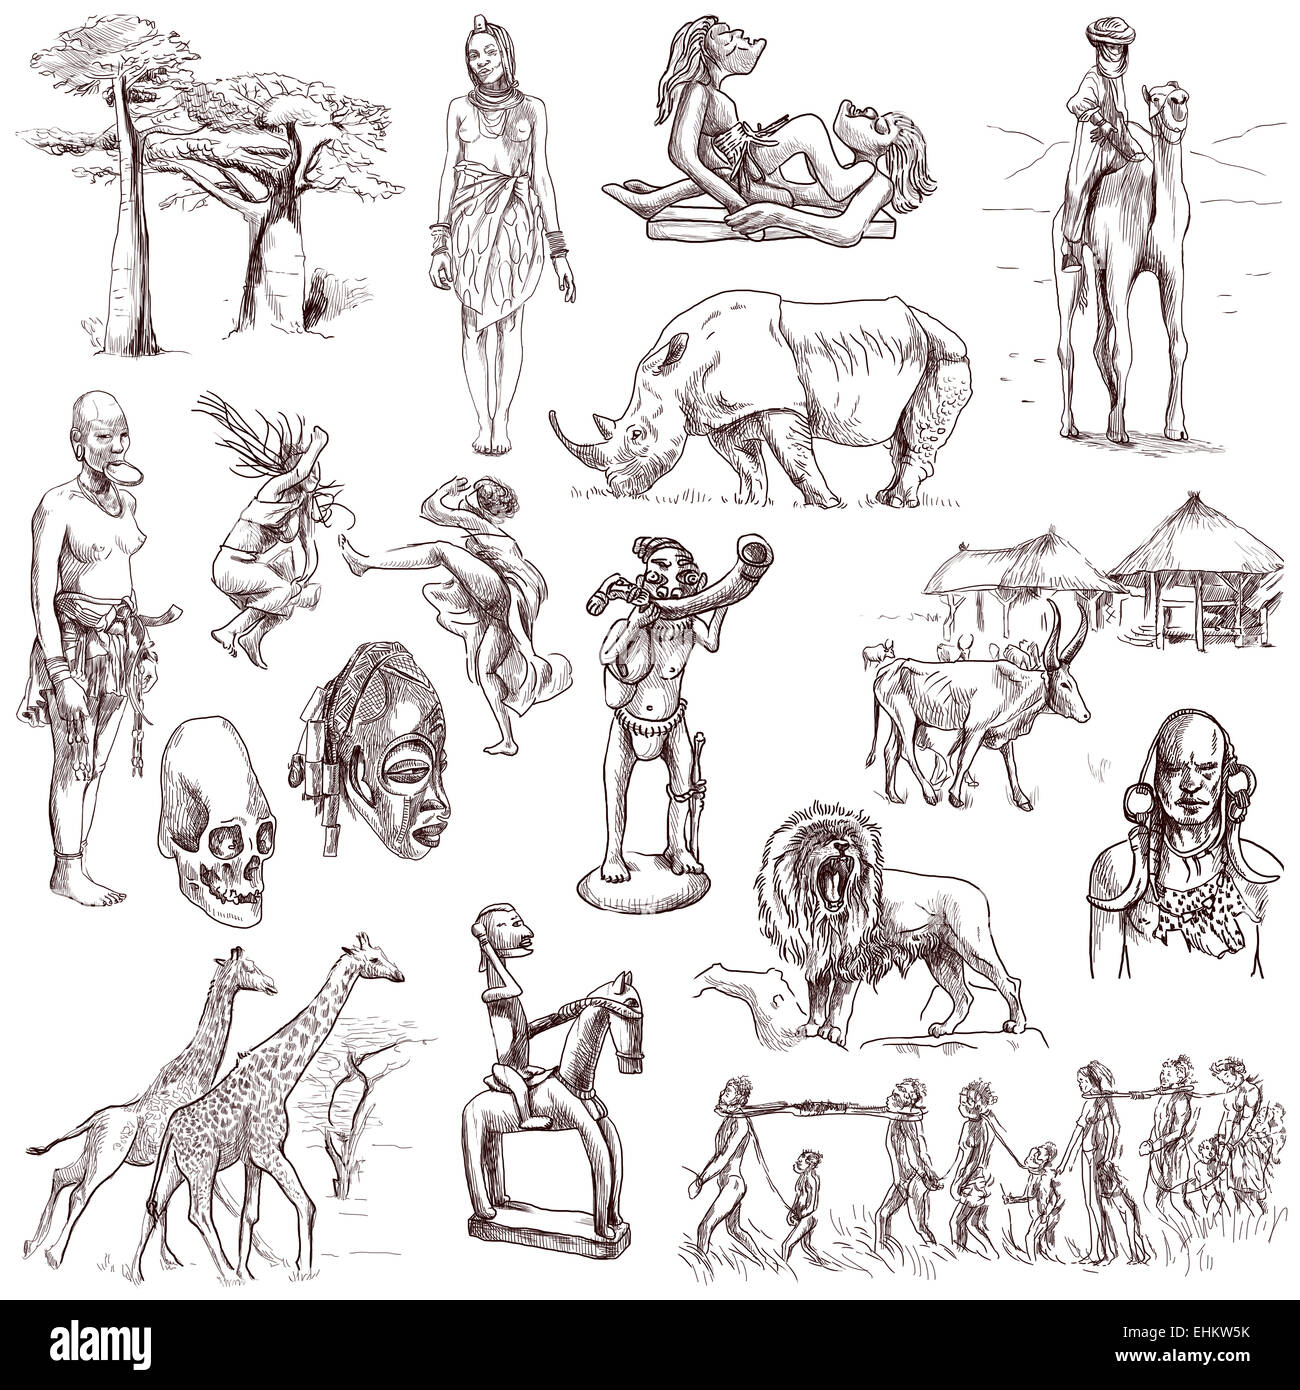 Série de voyages : AFRIQUE CENTRALE - Collection d'un hand drawn illustrations. Description : Grand hand drawn illustrations, ori Banque D'Images